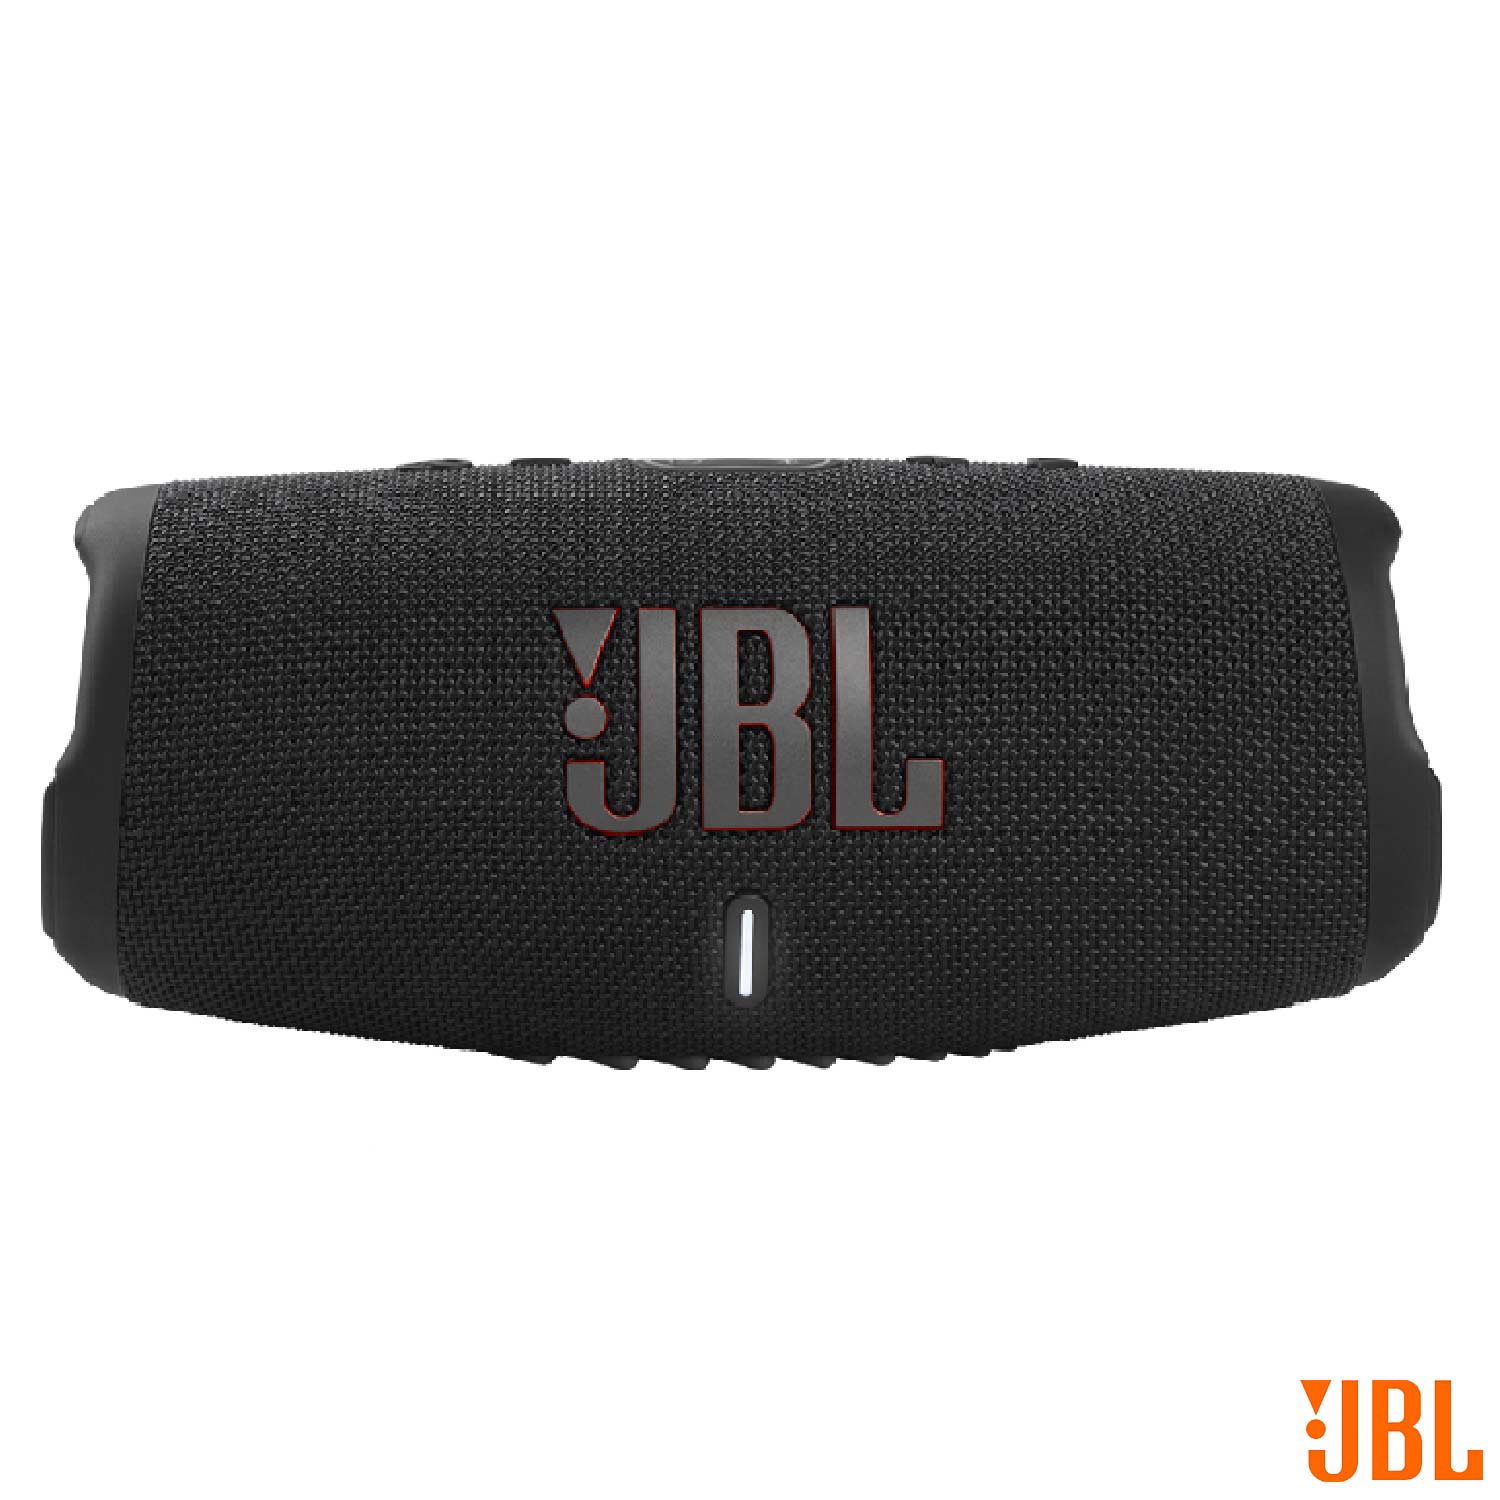 Caixa de Som Bluetooth JBL à Prova d'Água com Potência de 40 W Preta - JBLCHARGE5BLK